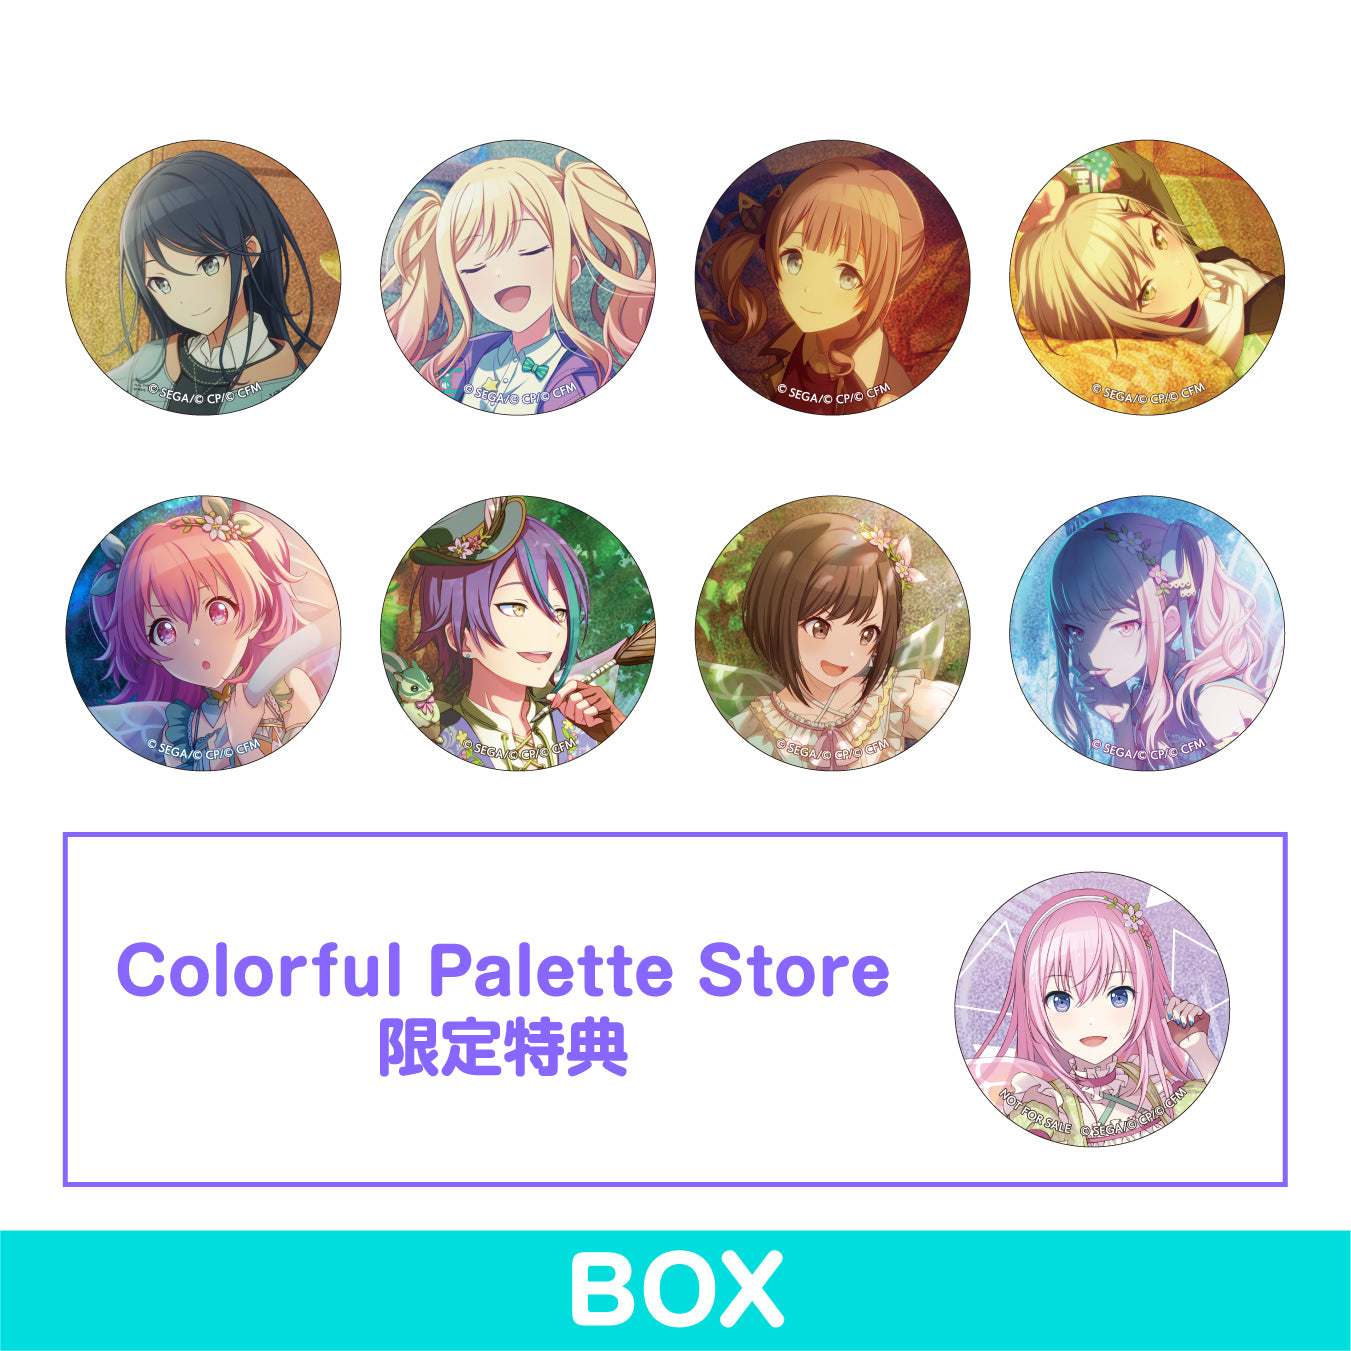 予約商品グリッター缶バッジ イベントイラストコレクション vol.8 B BOX – Colorful Palette Store